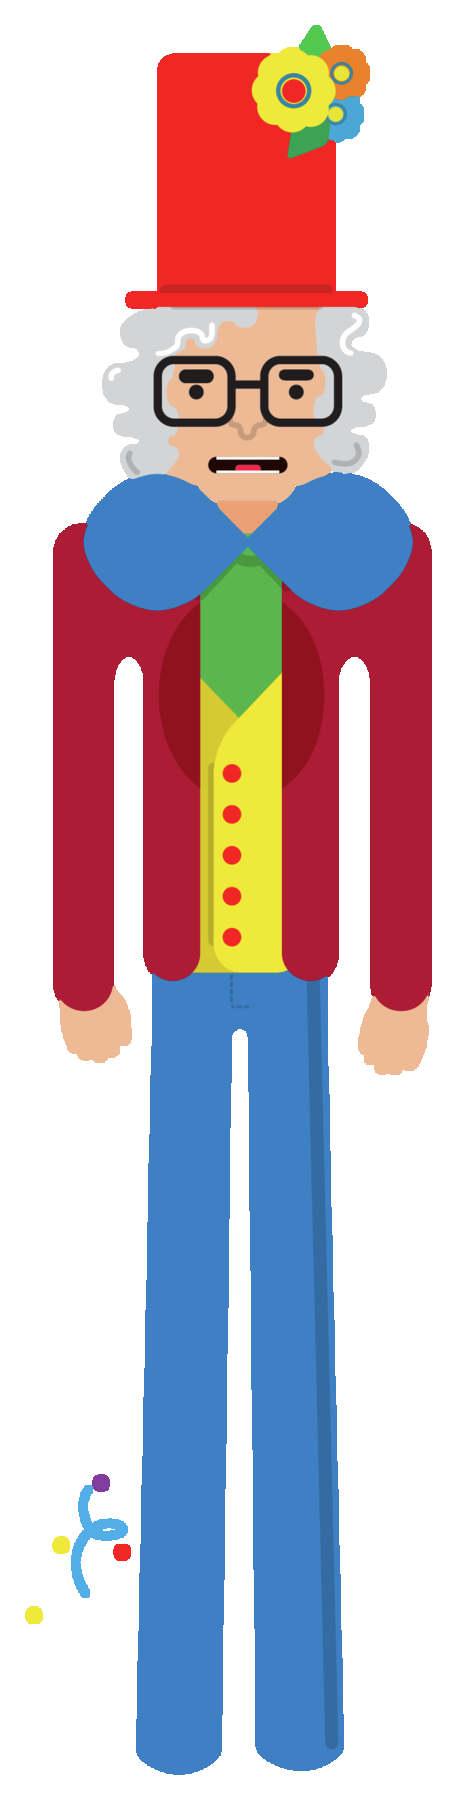 Ilustração. Boneco gigante de homem de cabelos grisalhos, usando cartola vermelha com flores, gravata borboleta azul, camisa verde, colete amarelo, paletó vermelho e calça azul. Há serpentinas próximo a ele.